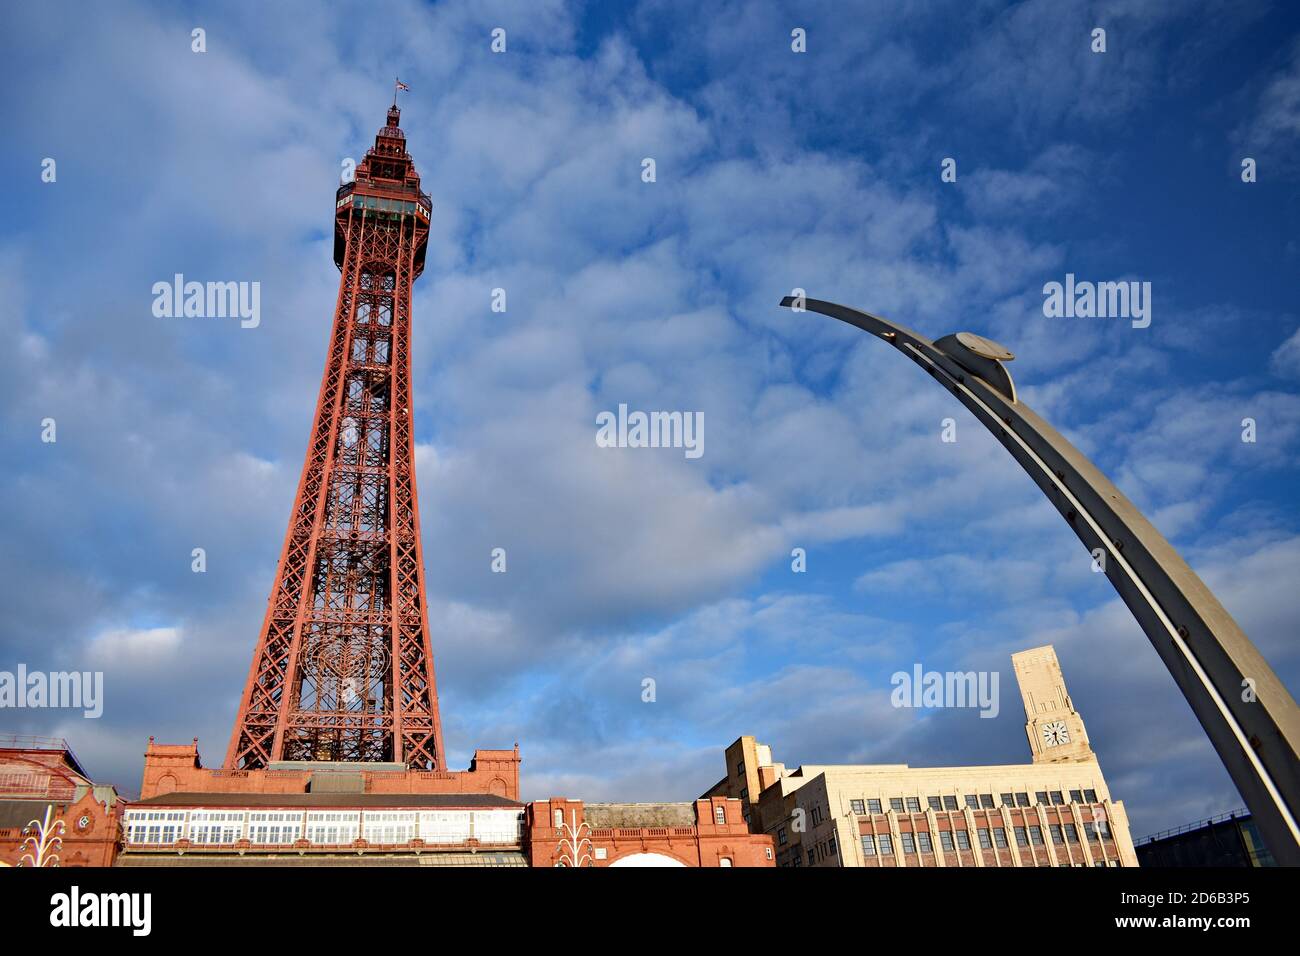 En regardant vers le haut la tour Blackpool à Lancashire, dans le nord-ouest de l'Angleterre. La couleur rouge de la tour se distingue du ciel bleu. Banque D'Images